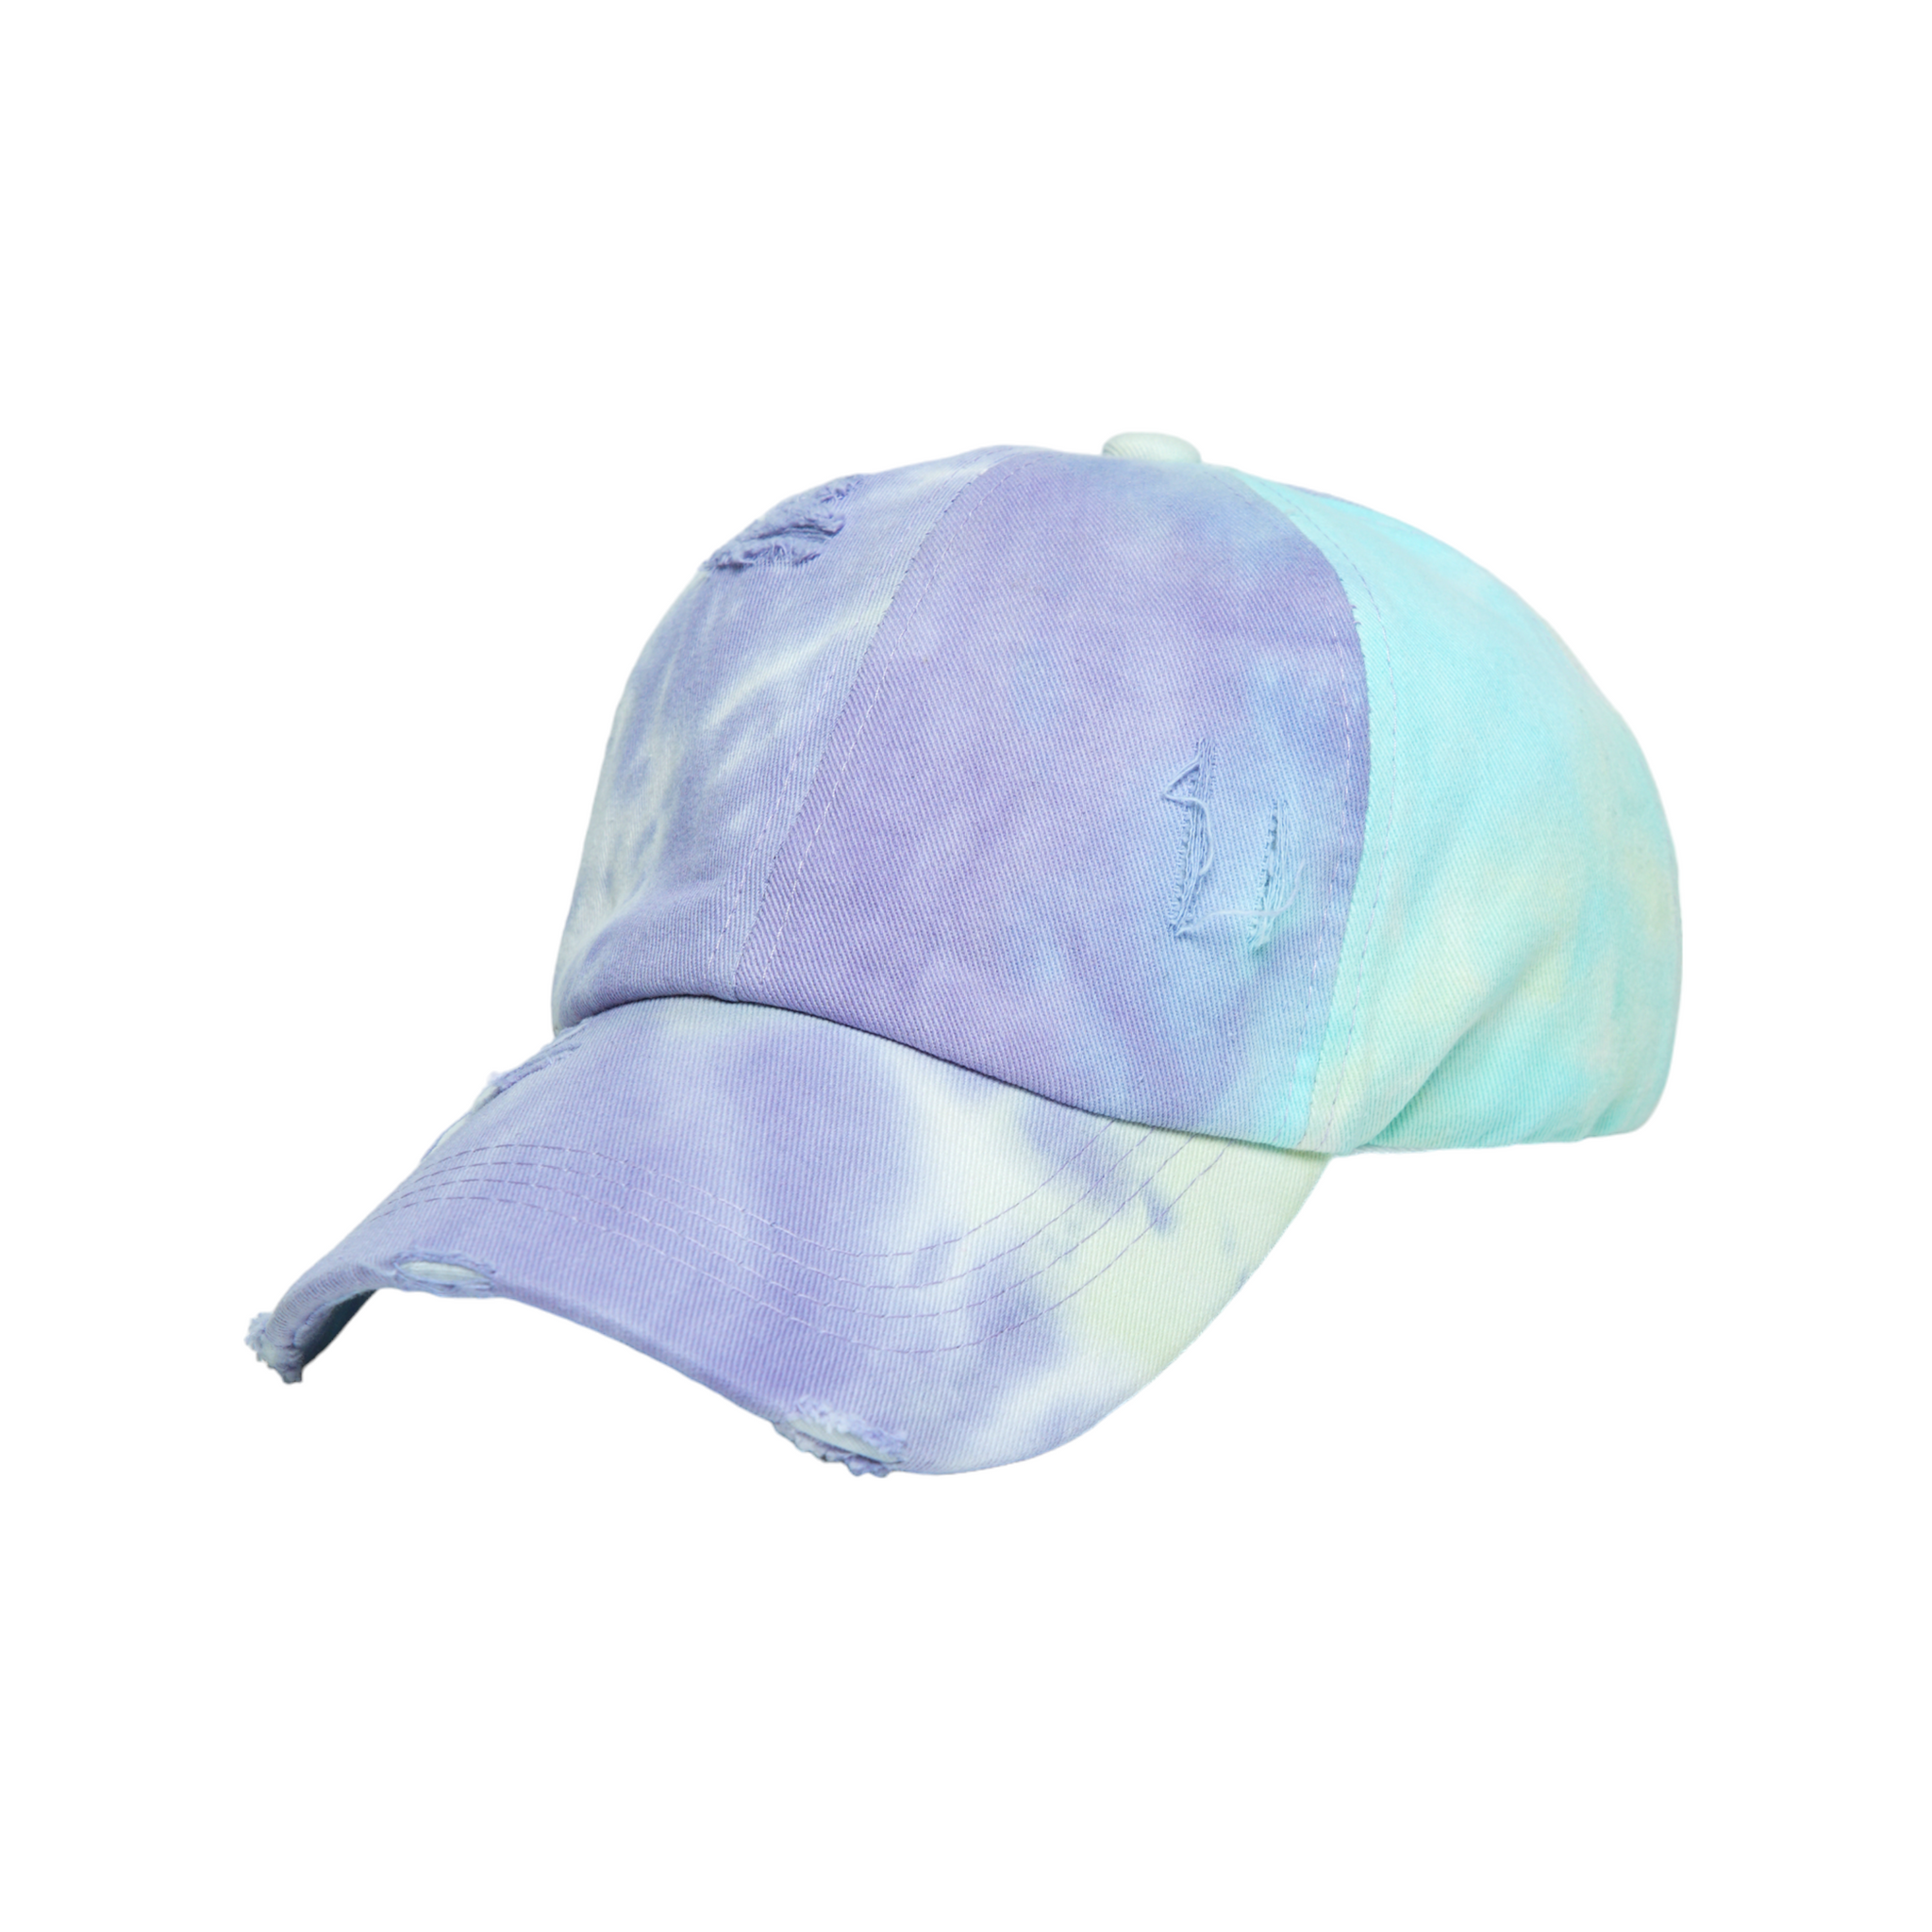 Chokore Distressed Tie-Dye Baseball Cap (White & Lavender)